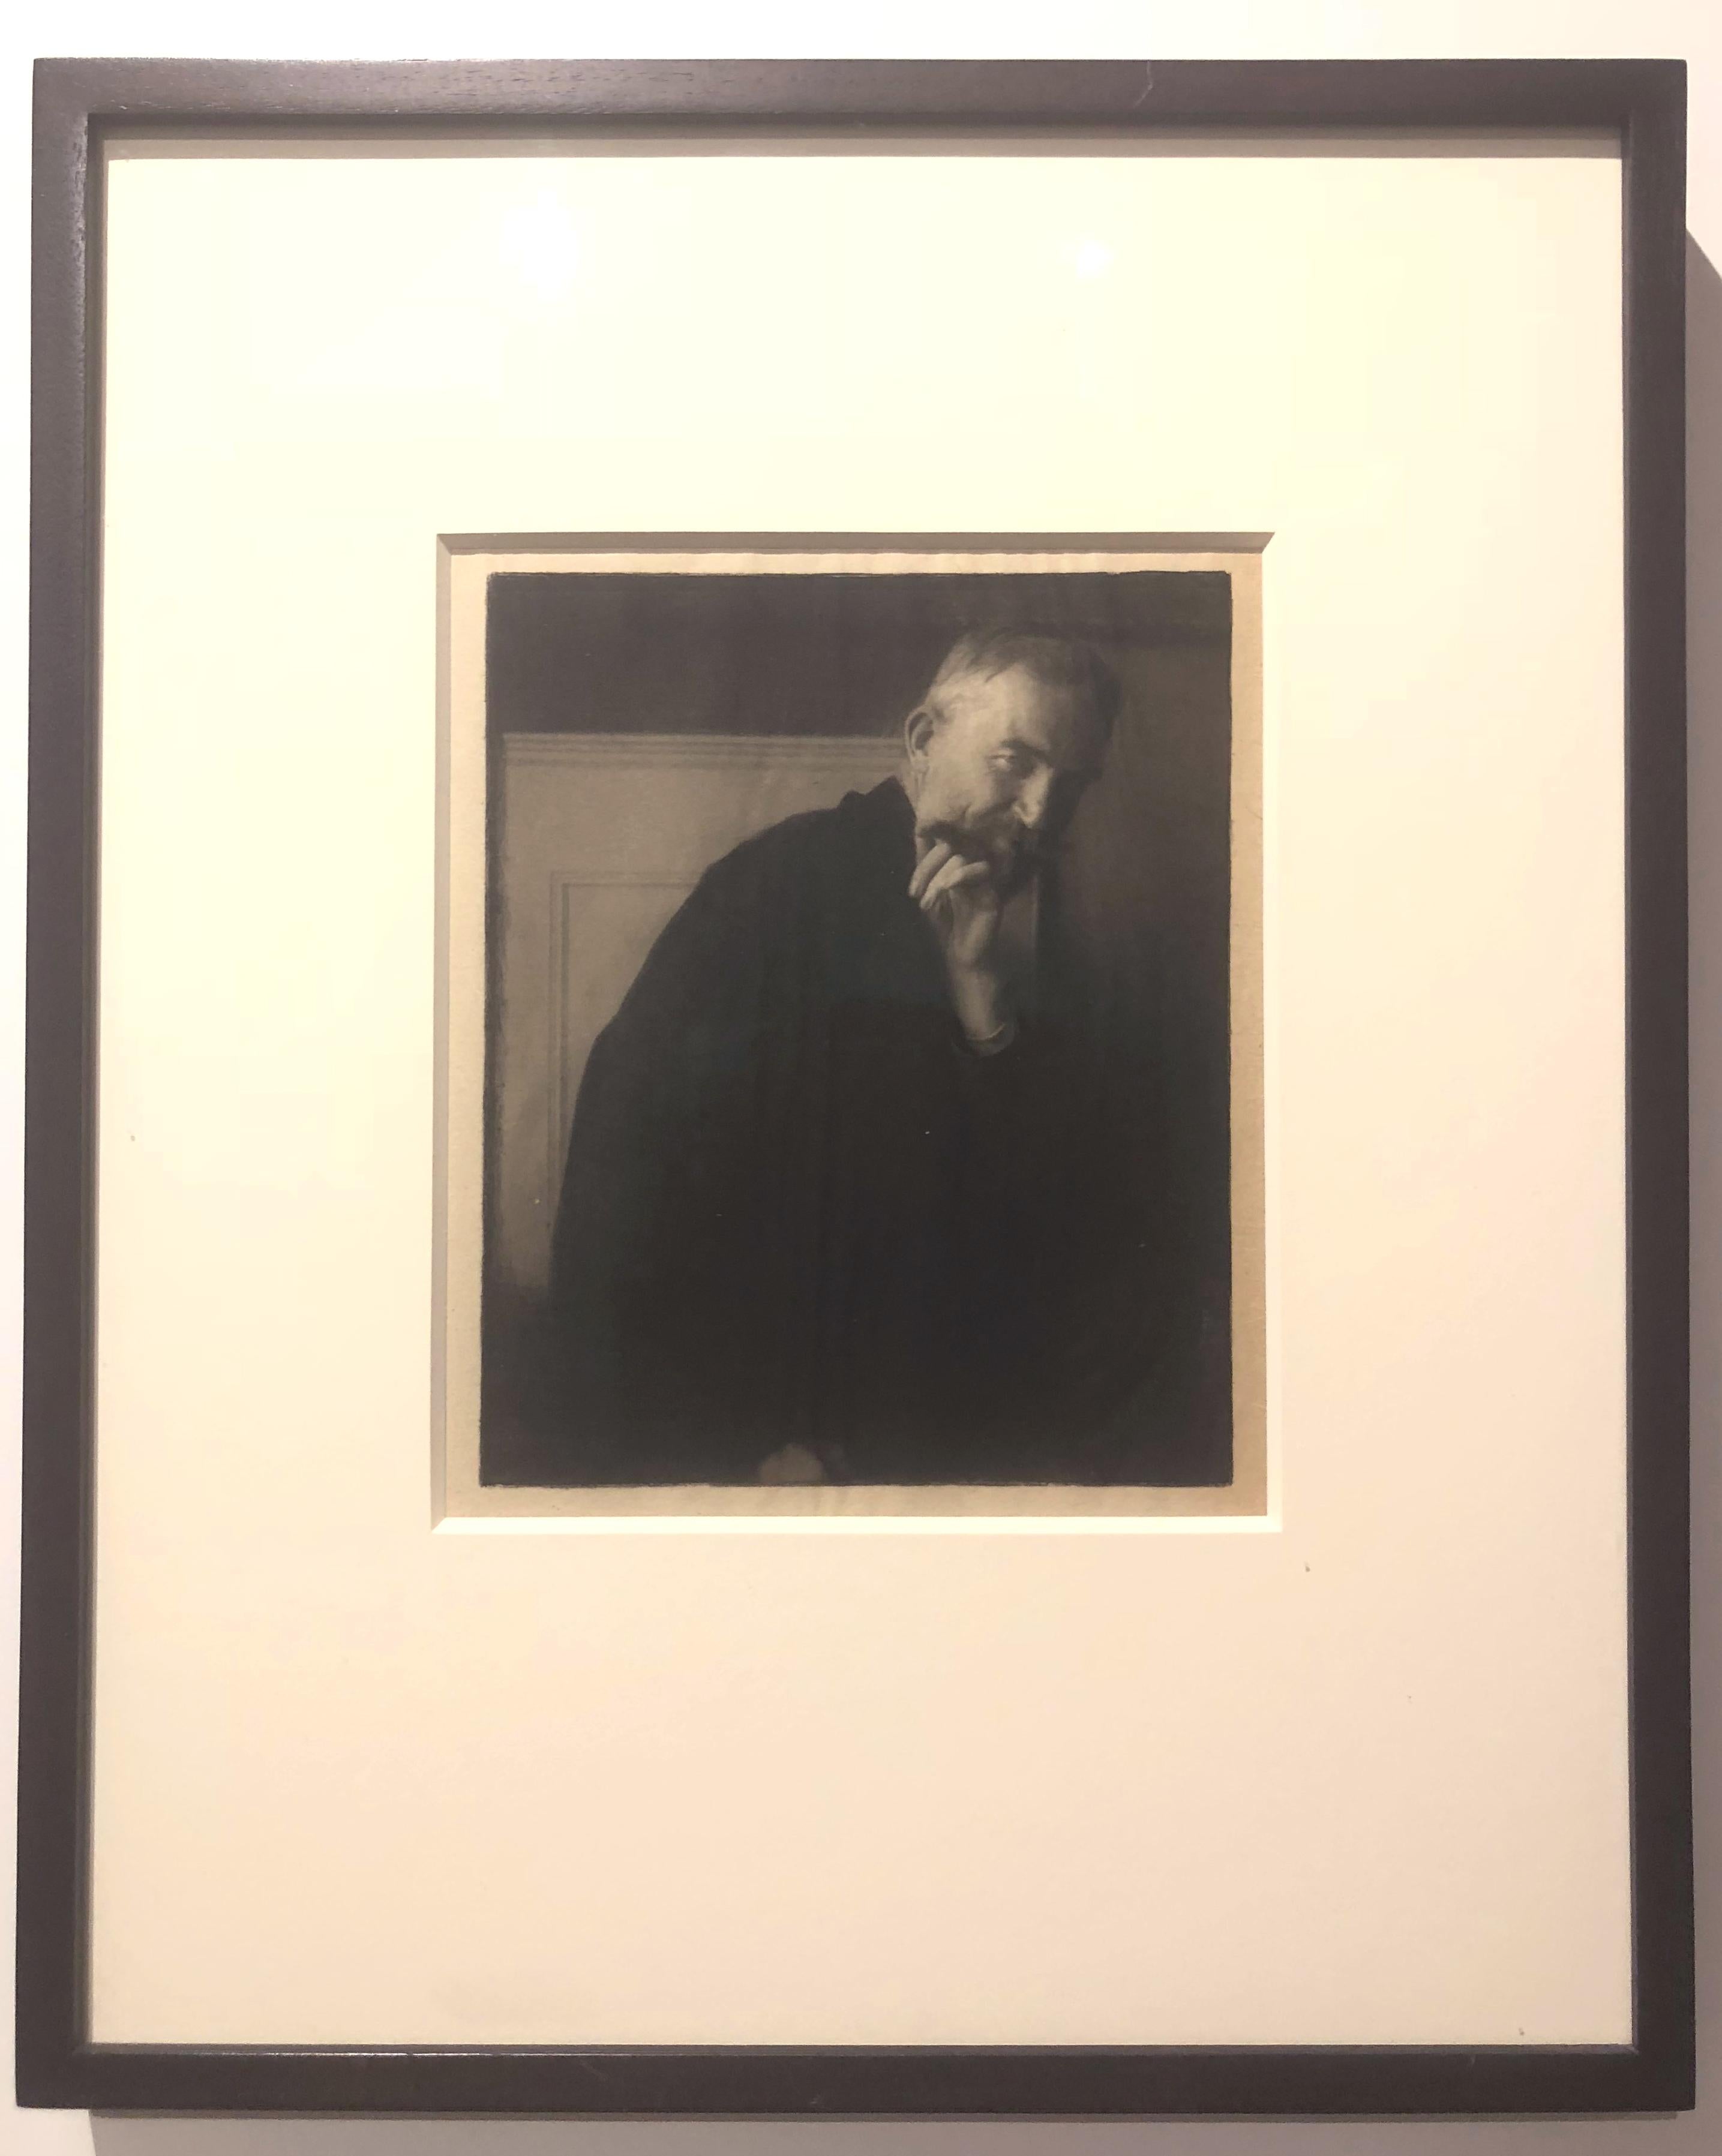 Edward Steichen (1879-1973). The Photographer’s Best Model – Bernard Shaw, 1913. 7.75 x 6.5